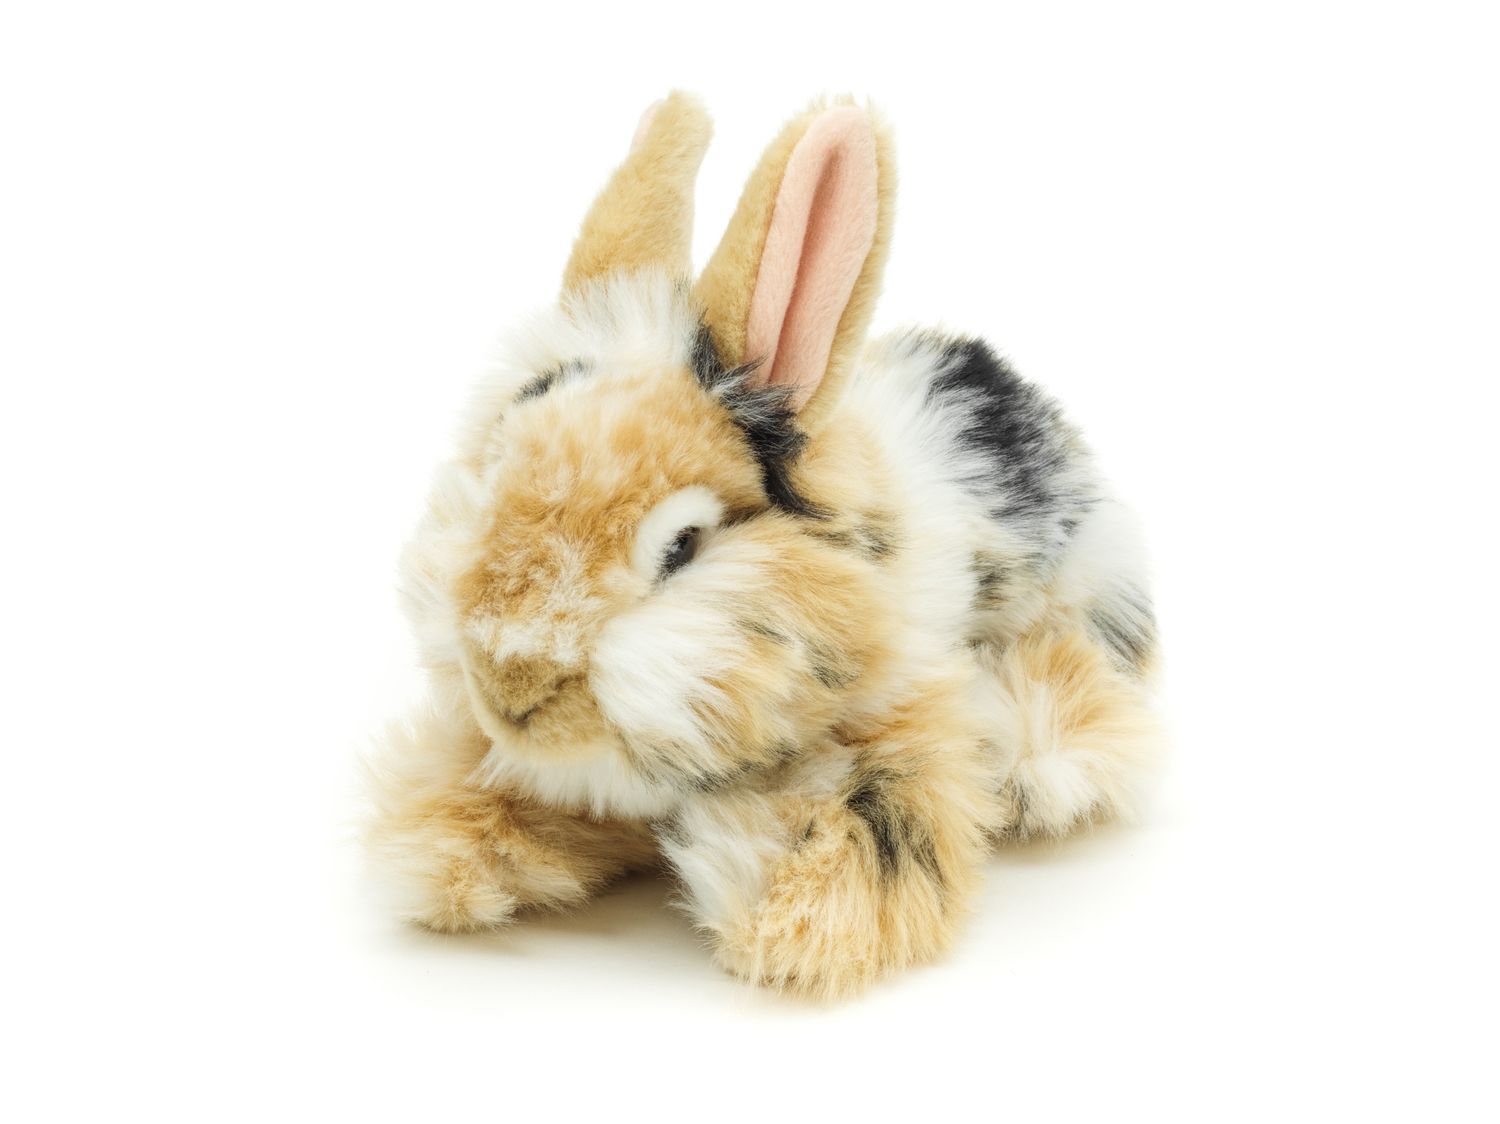 Löwenkopf-Kaninchen mit aufgestellten Ohren - liegend - schwarz-braun-weiß gescheckt - 23 cm (Höhe) - Plüsch-Hase - Plüschtier, Kuscheltier